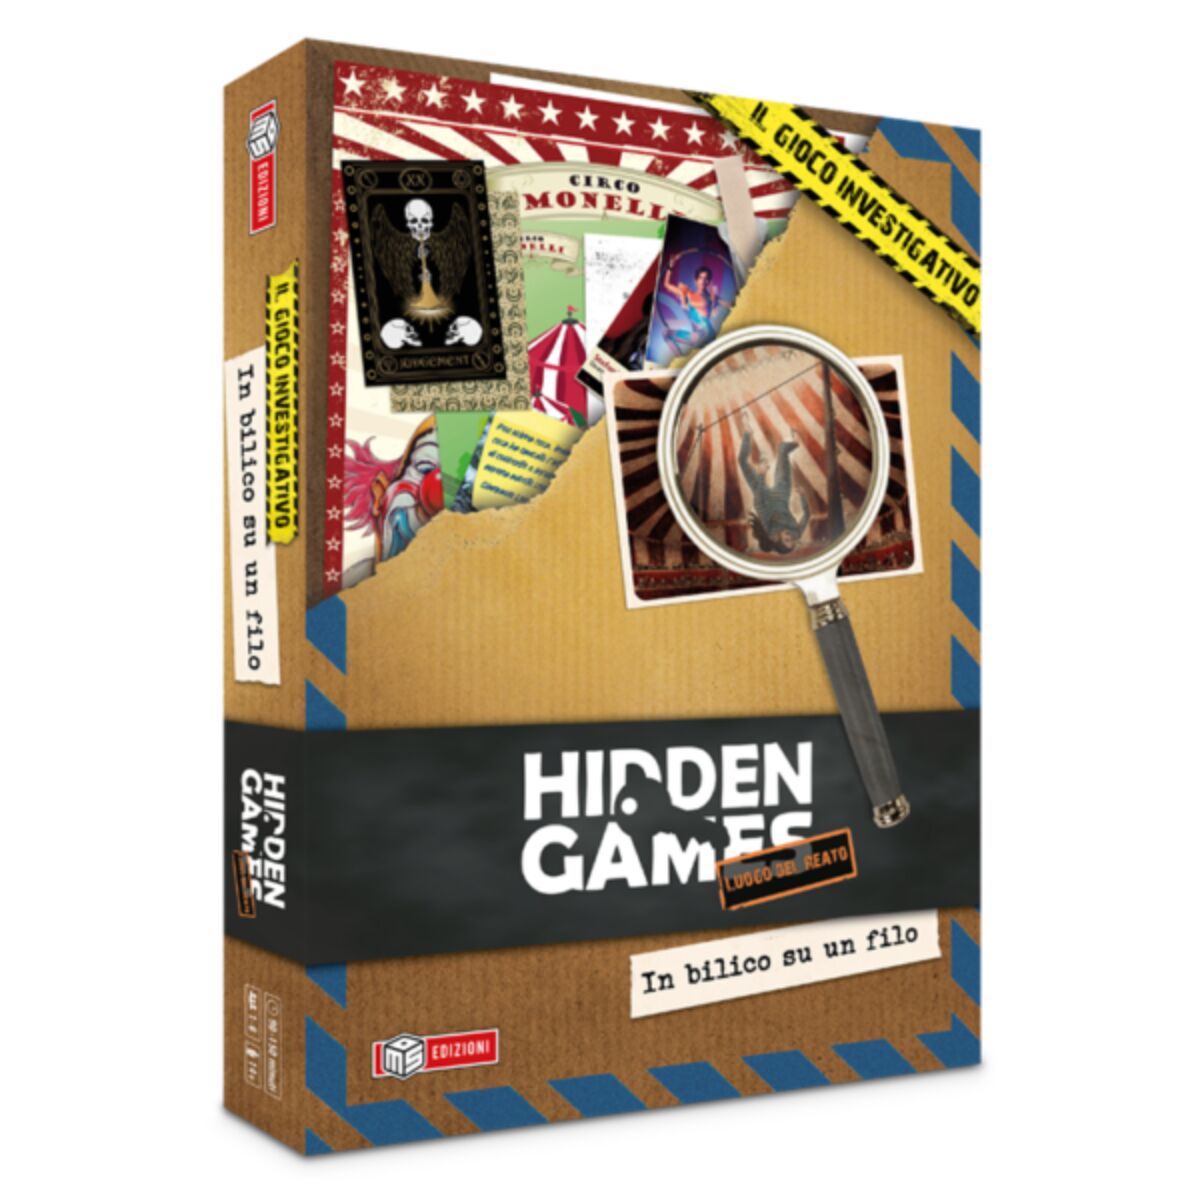 In bilico su un filo - Hidden Games gioco da tavolo